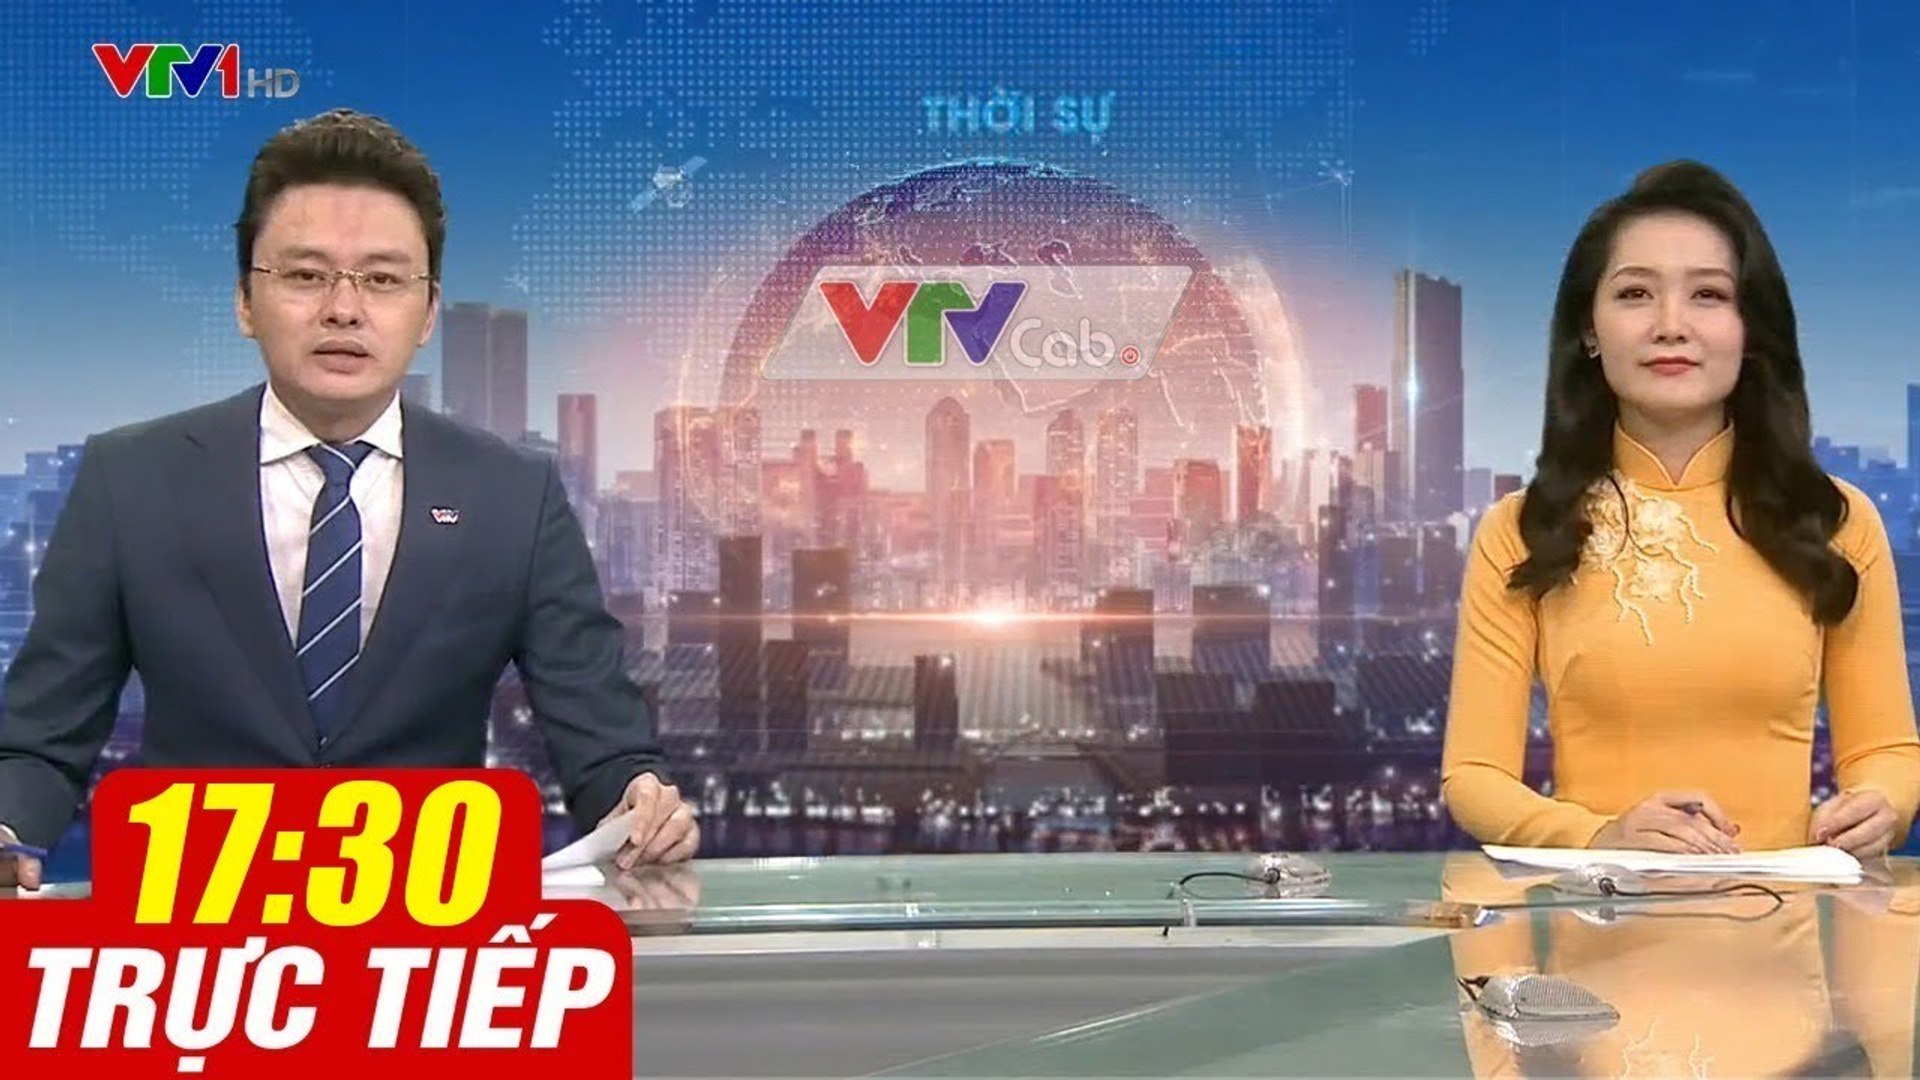 Trực Tiếp VIỆT NAM HÔM NAY 17h30 ngày 24.08.2020  Tin tức thời sự VTV1 mới nhất hôm nay